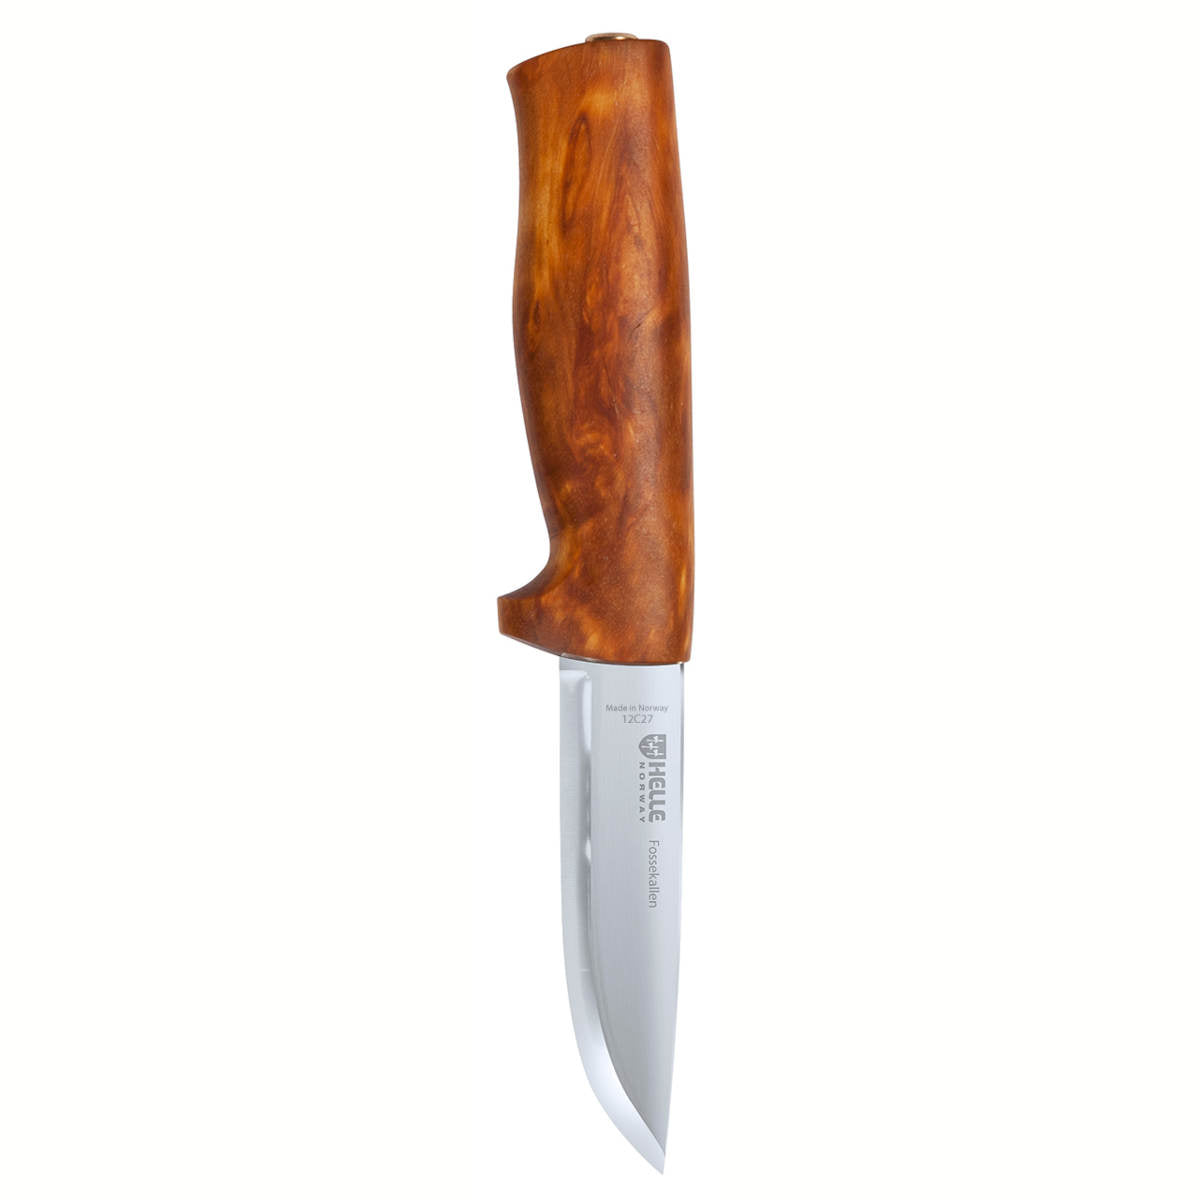 Helle Fossekallen Knife - Traditional Field Knife.